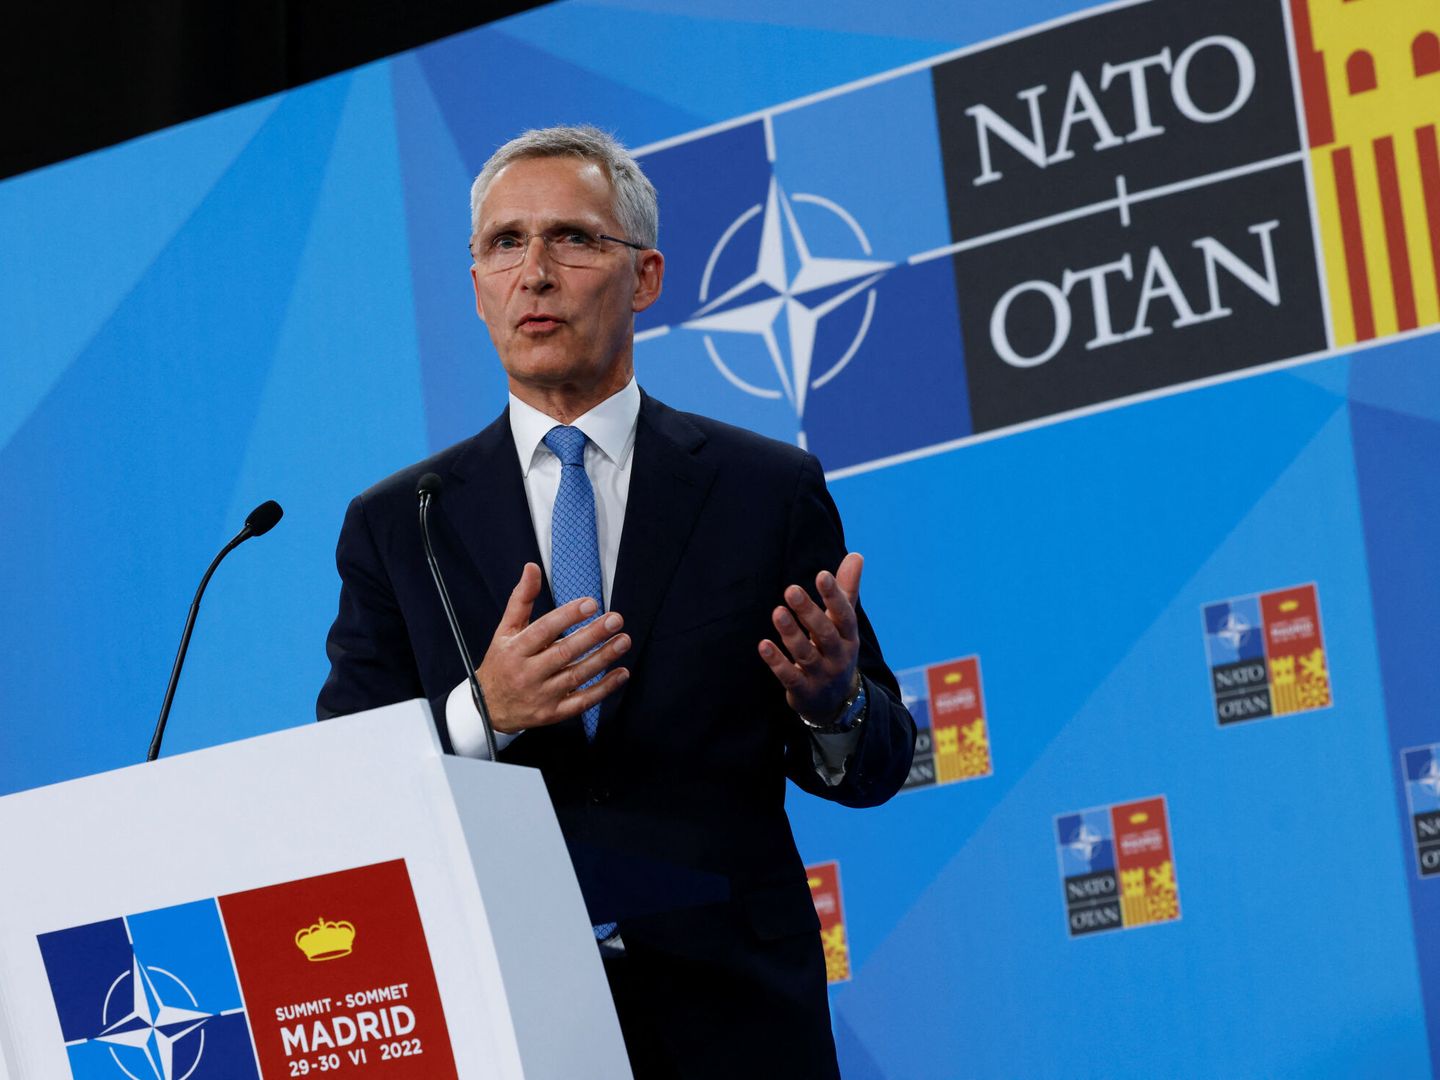 El secretario general de la Alianza Atlántica, Jens Stoltenberg. (Reuters/Yves Herman)